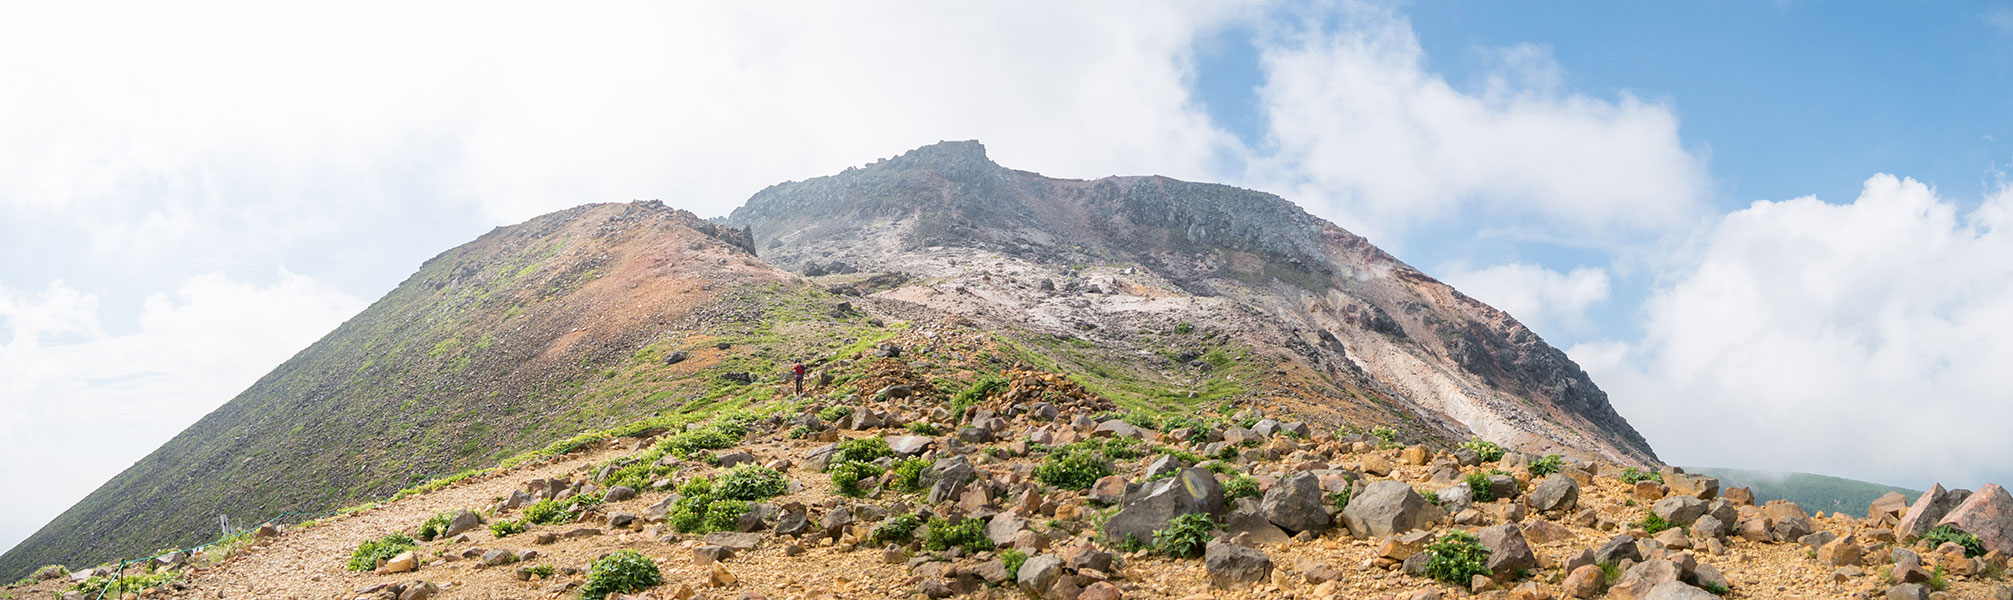 峰の茶屋跡方面から見上げる茶臼岳